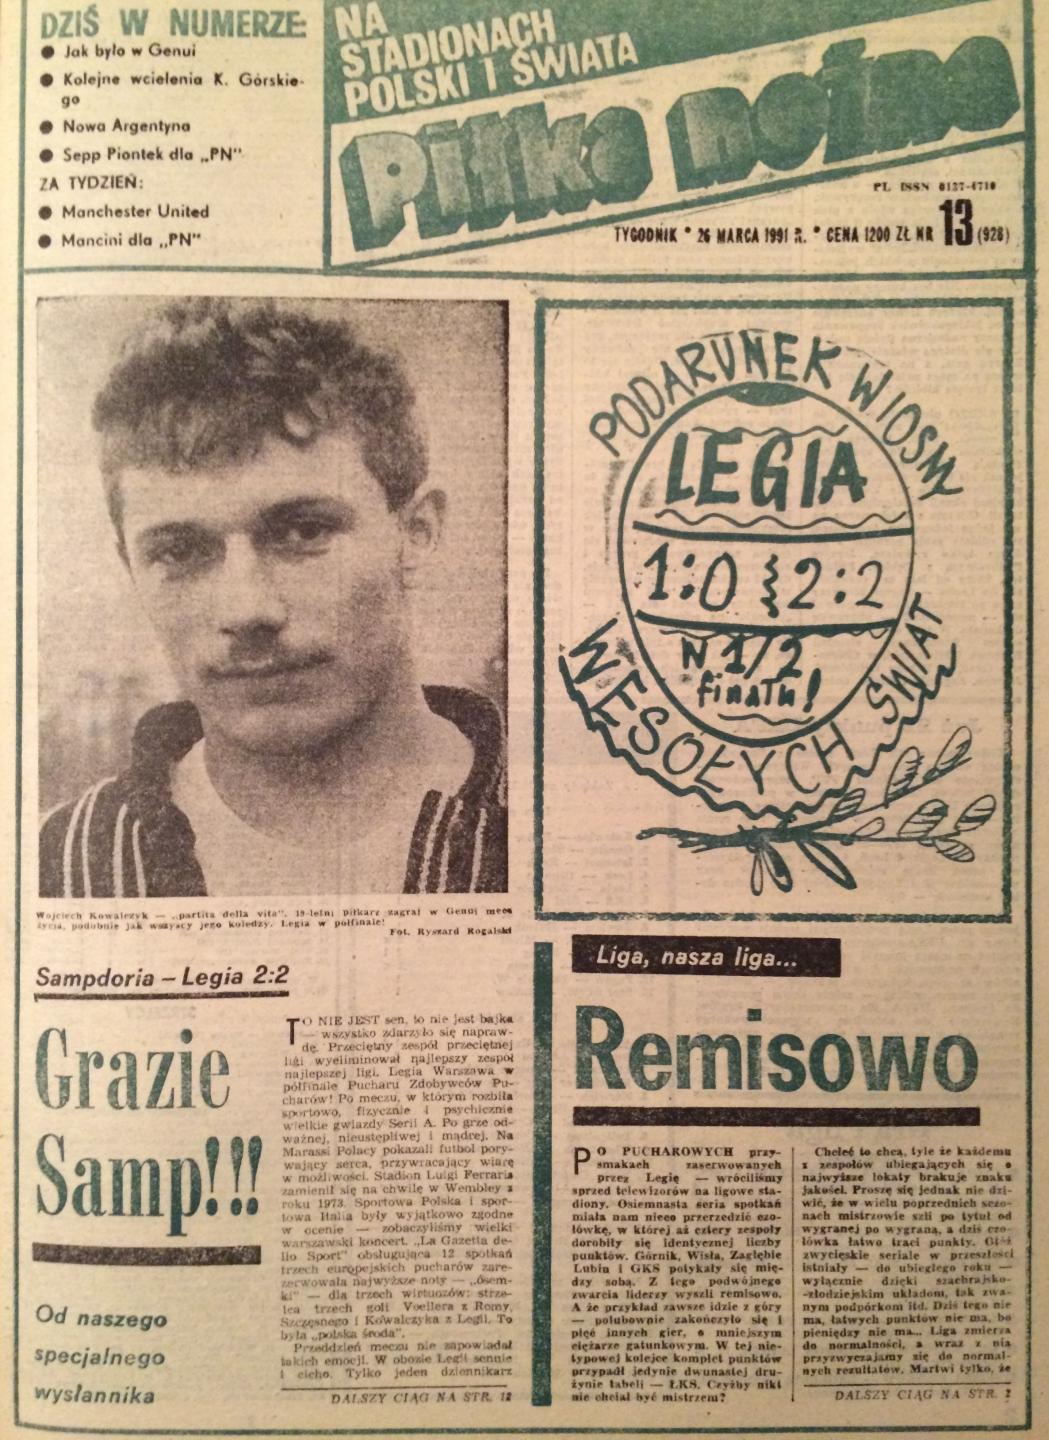 Okładka Piłki Nożnej po meczu Sampdoria - Legia 2:2 (20.03.1991).